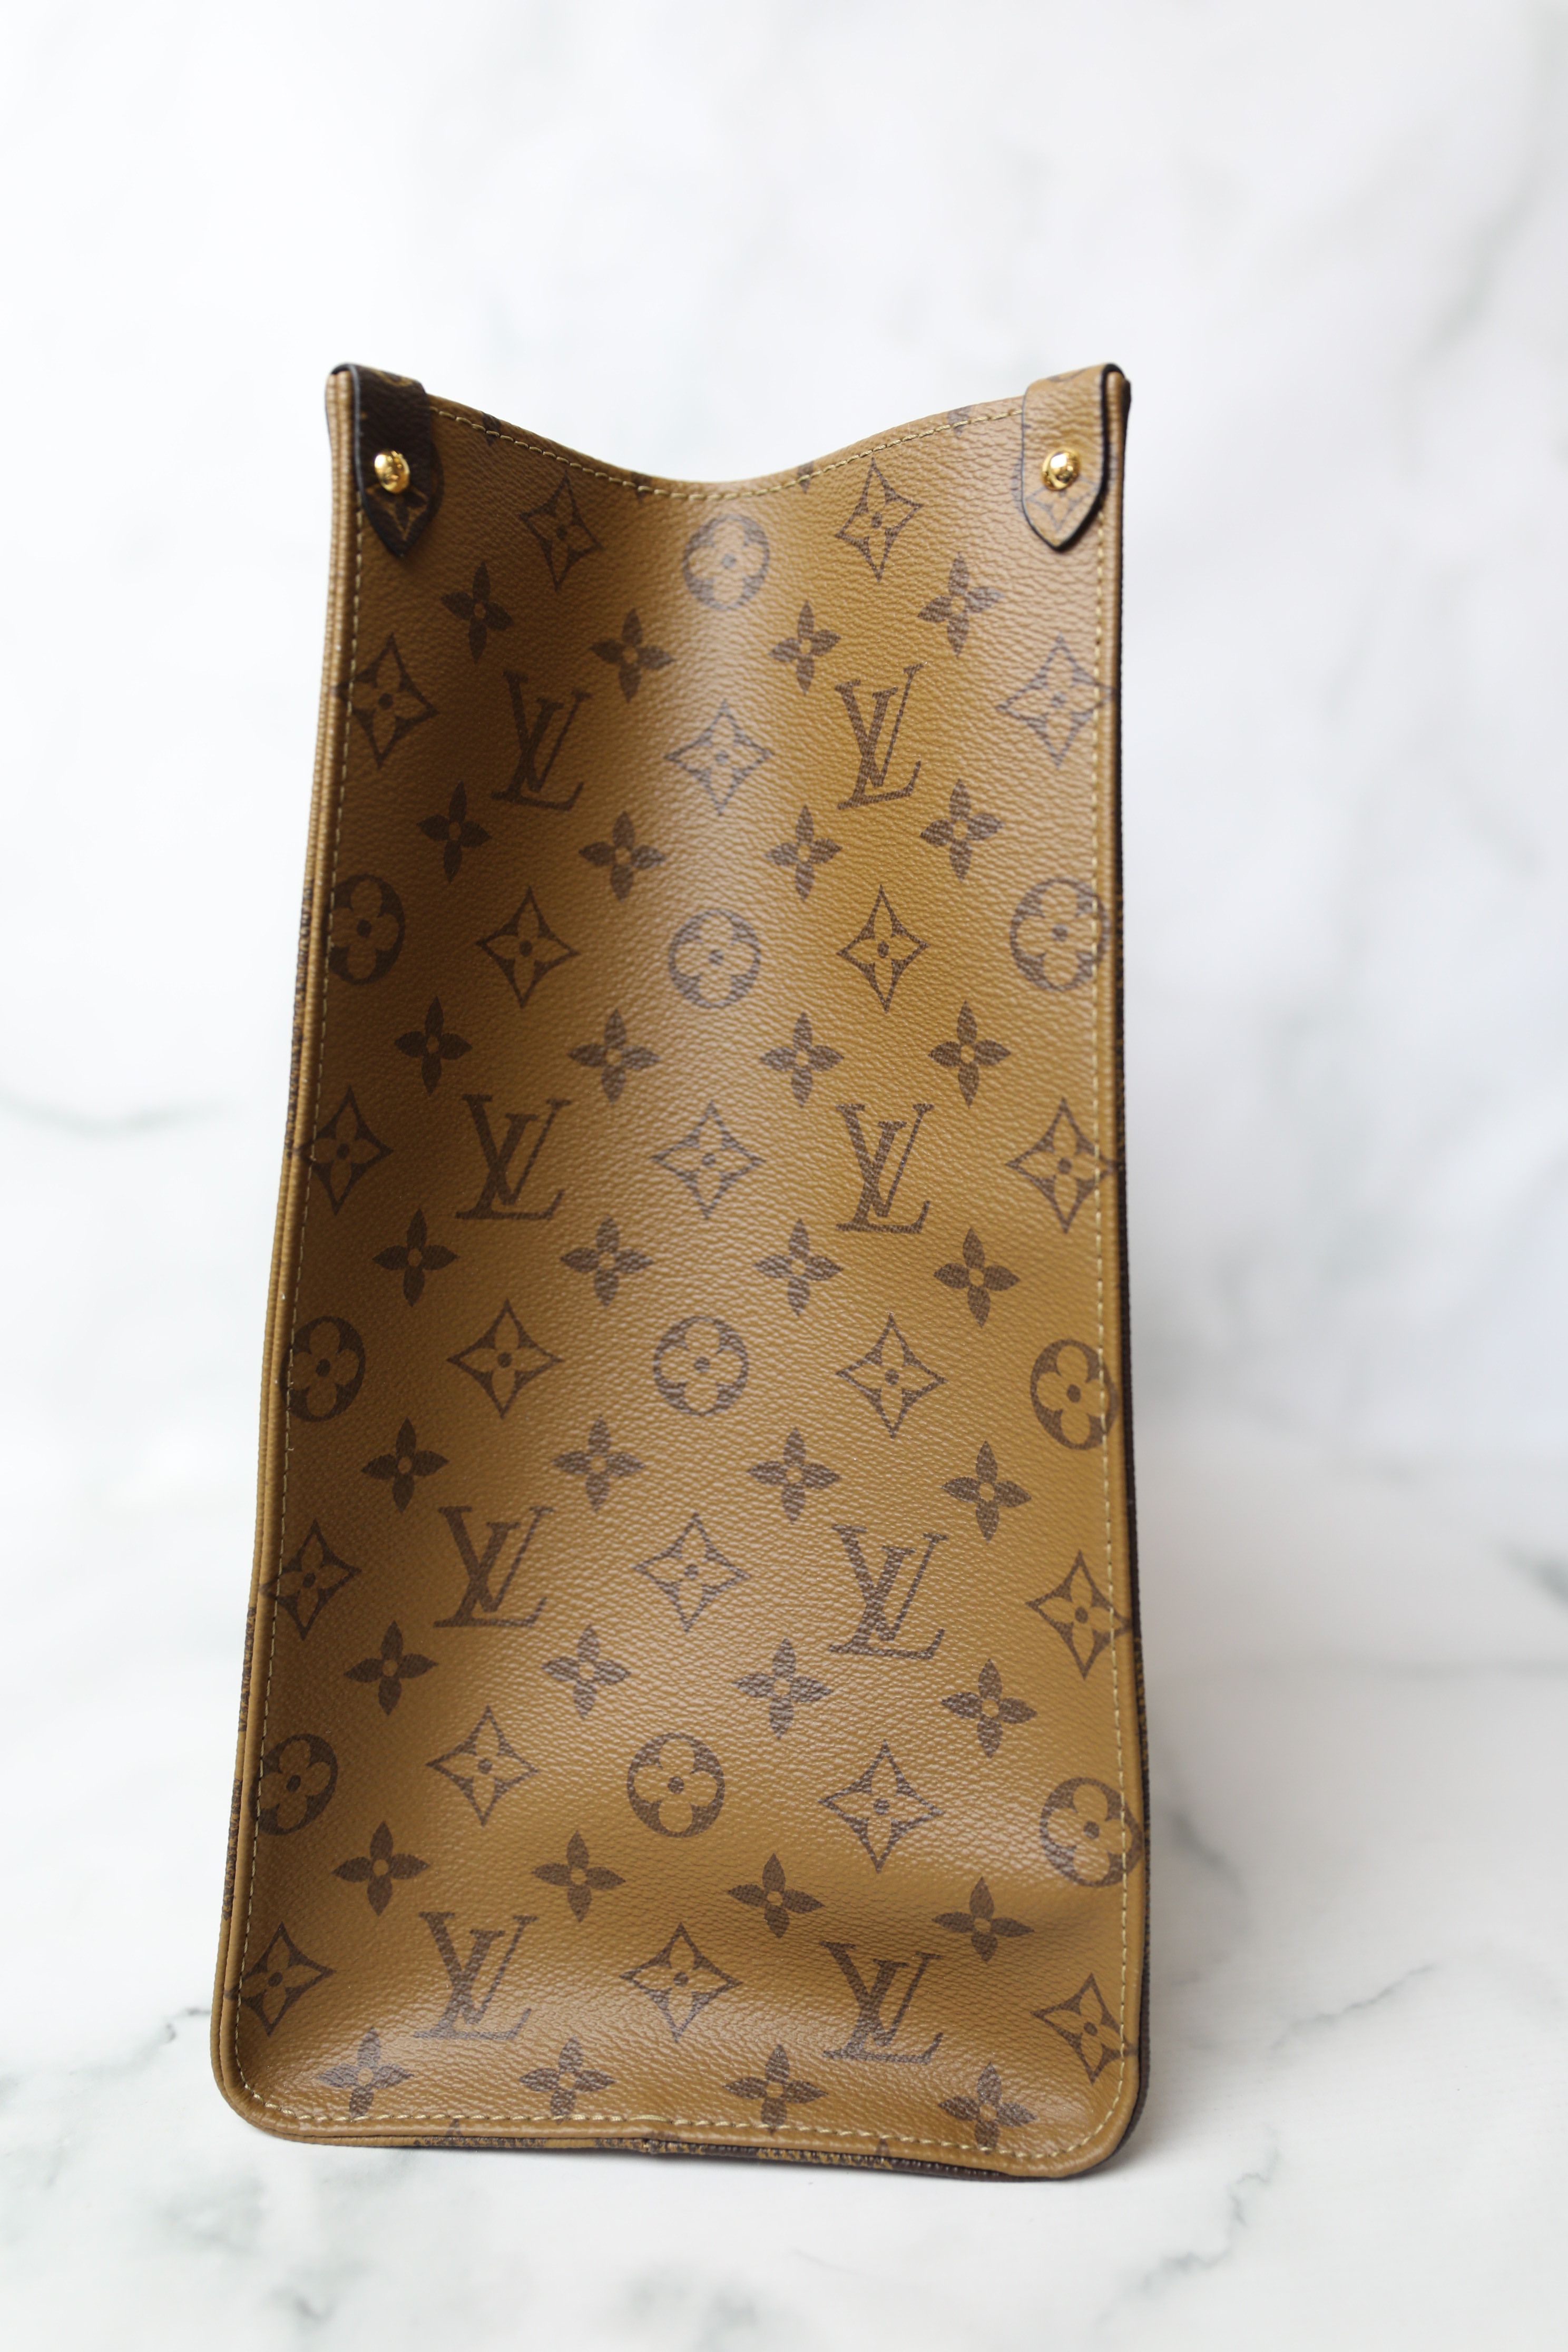 Louis Vuitton Reverse Wristlet Strap, New - No Box - Julia Rose Boston